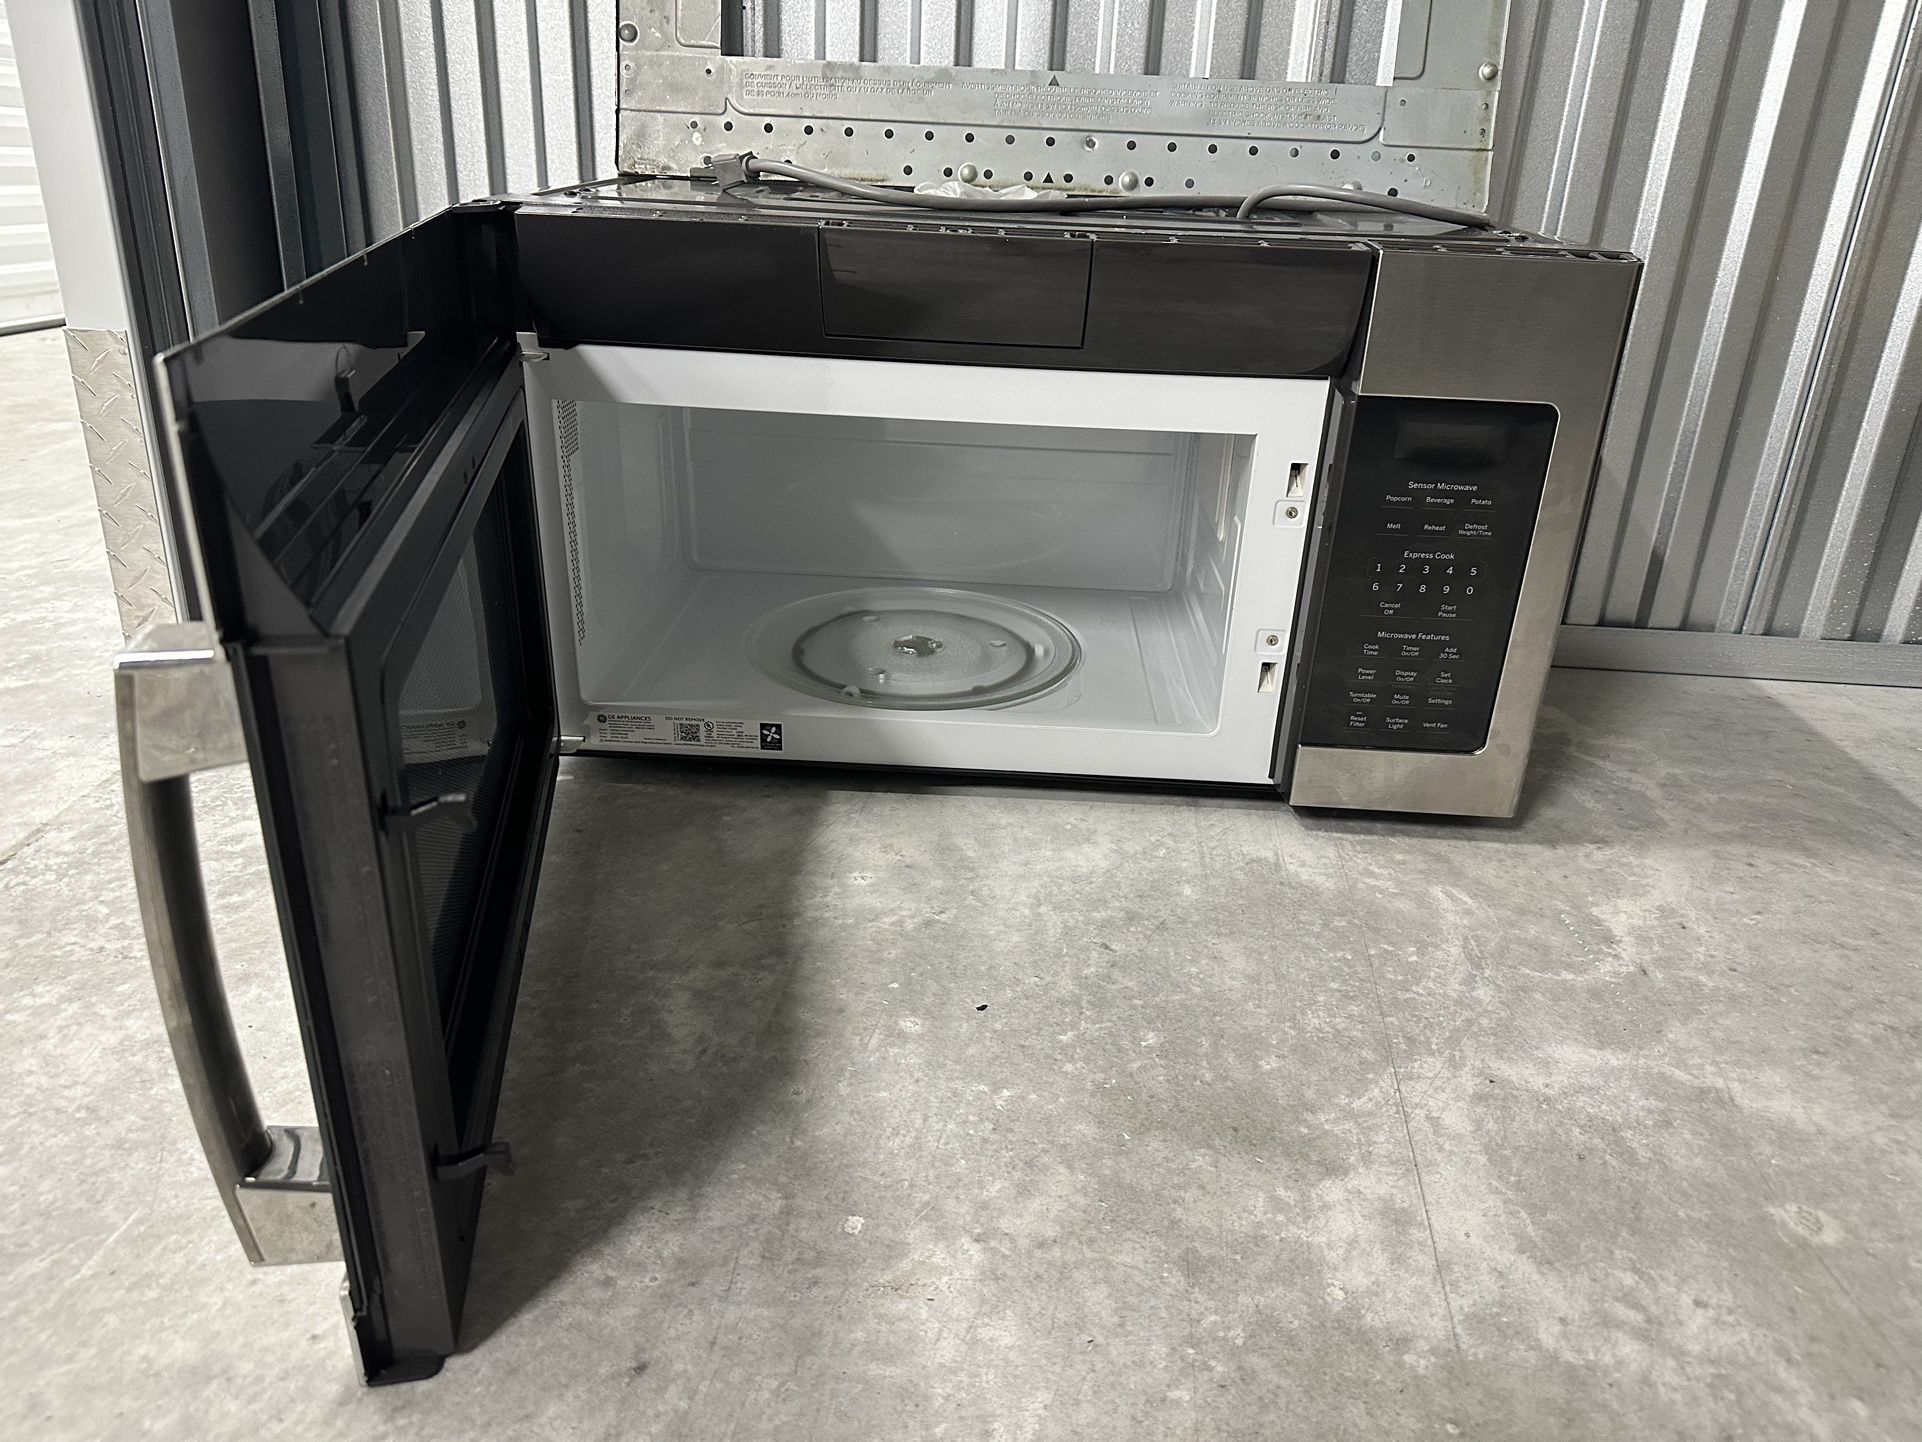 GE - 1.7 Cu. Ft. Over-the-Range Microwave - Black stainless steel  Model:JVMBLTS Z890 for Sale in Webster, TX - OfferUp